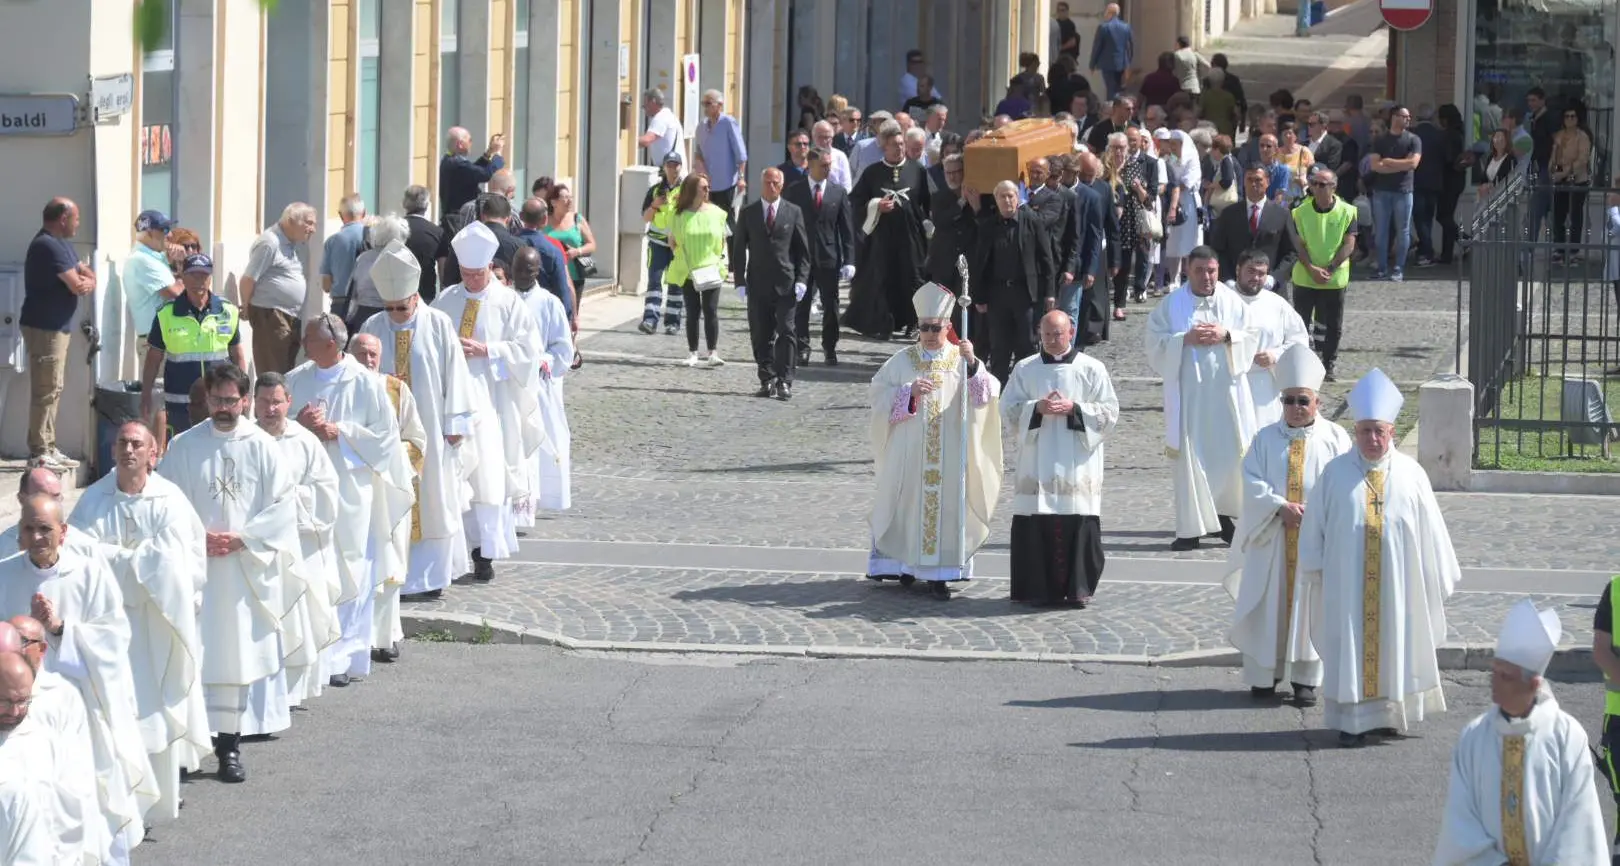 Corteo funebre per Monsignor Luigi Marrucci, vescovo emerito della Diocesi di Civitavecchia e Tarquinia